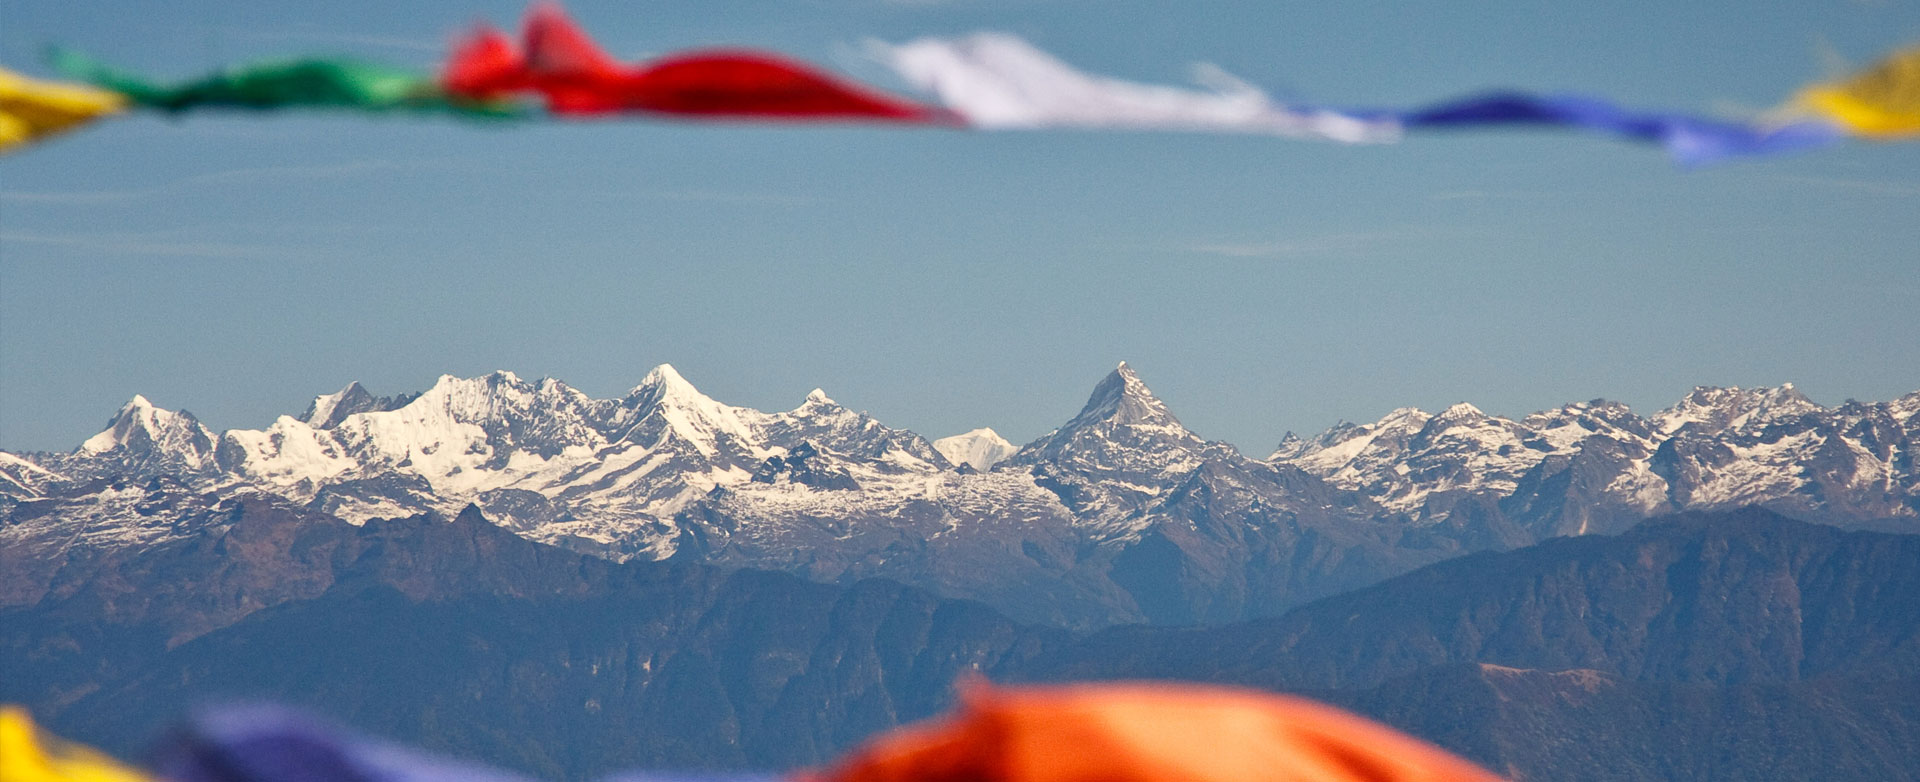 View of Himalayas - Bhutan